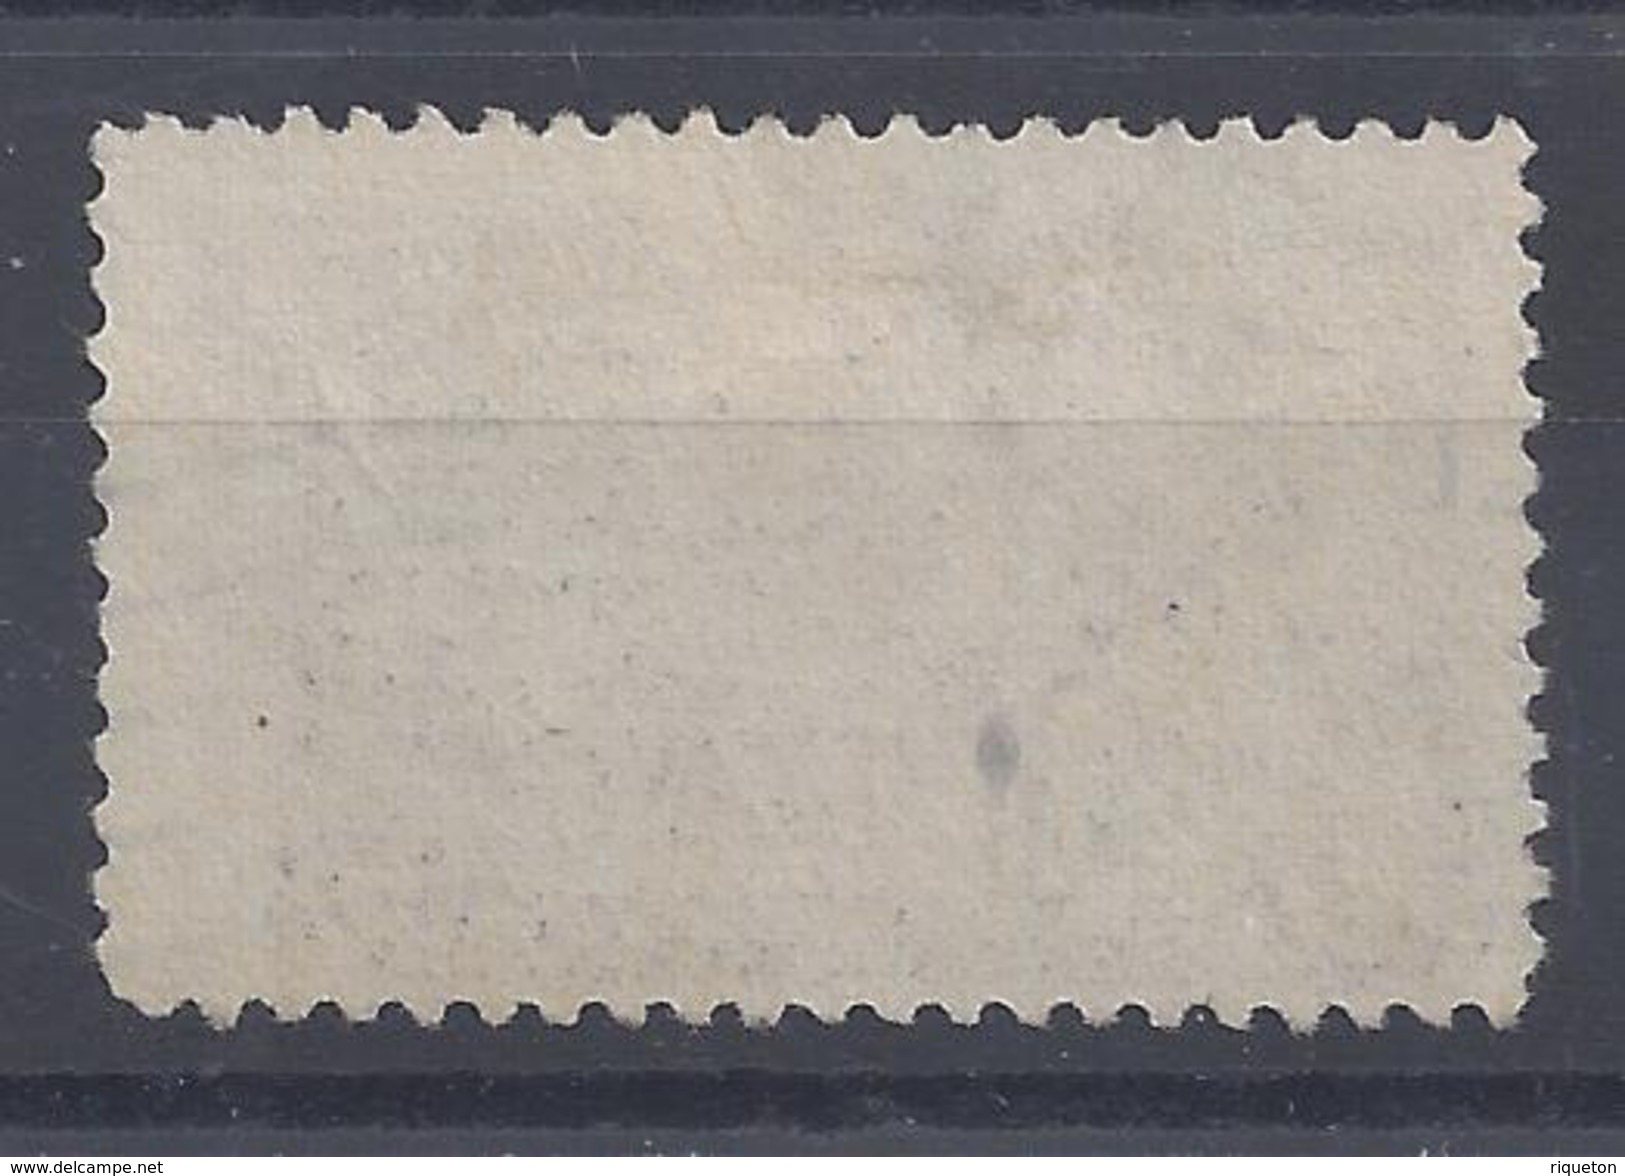 ETATS-UNIS - 1885 -  Timbre Pour Lettre Par Exprès - N° 3 - Oblitéré - B - - Special Delivery, Registration & Certified